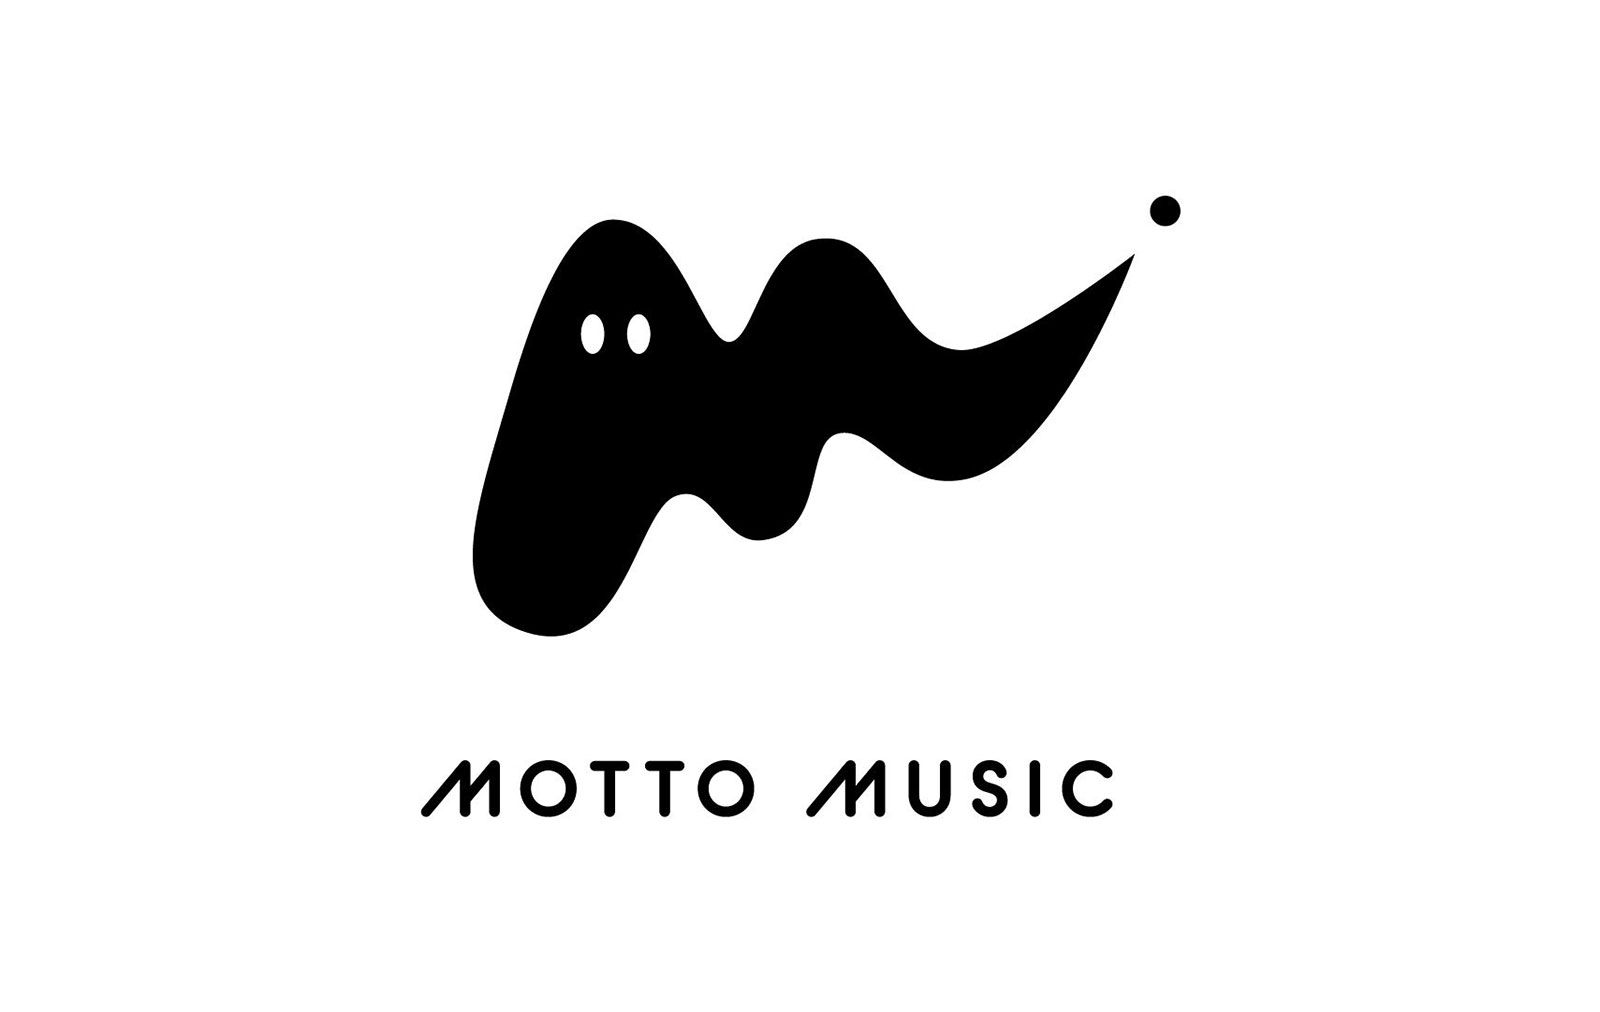 MOTTO MUSIC